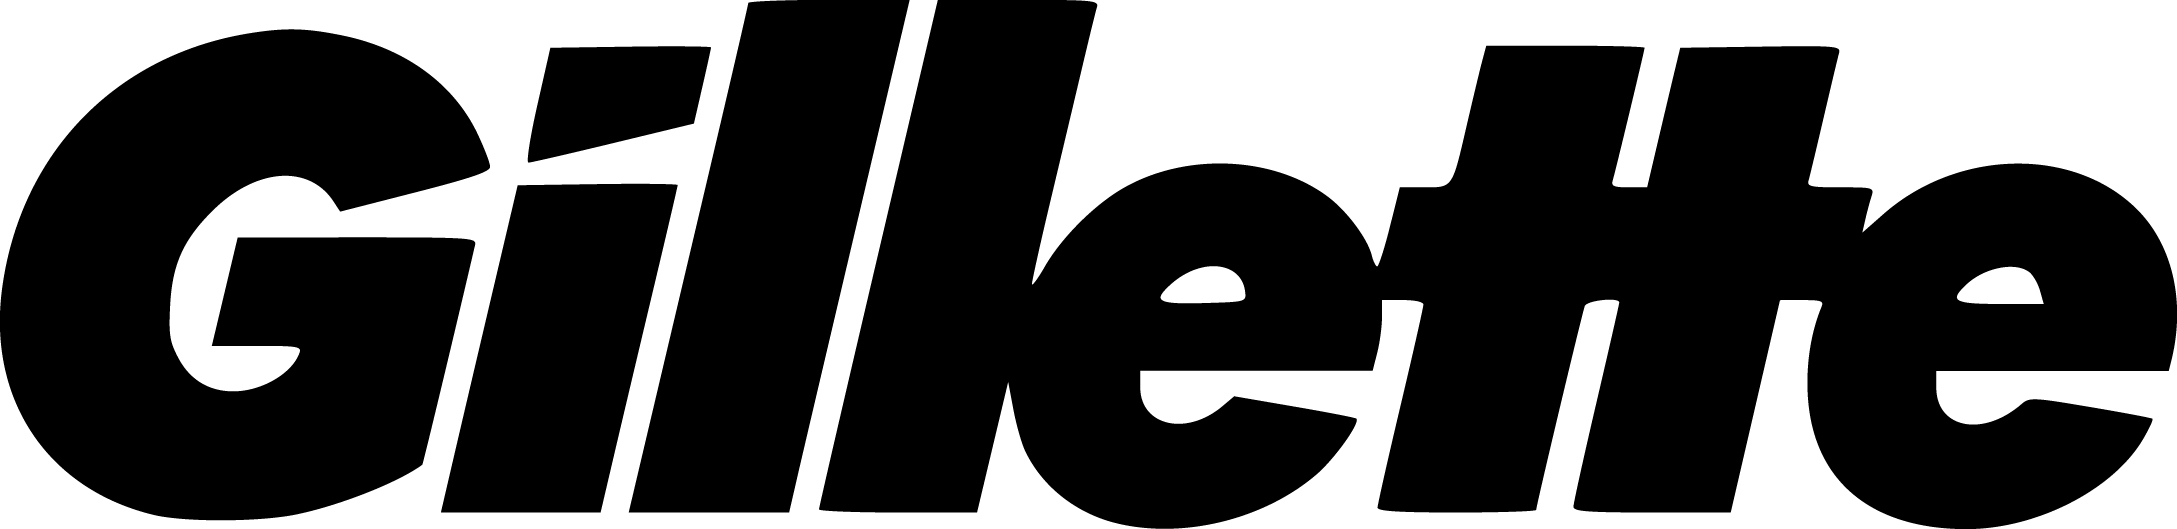 Gillette-Logo.png